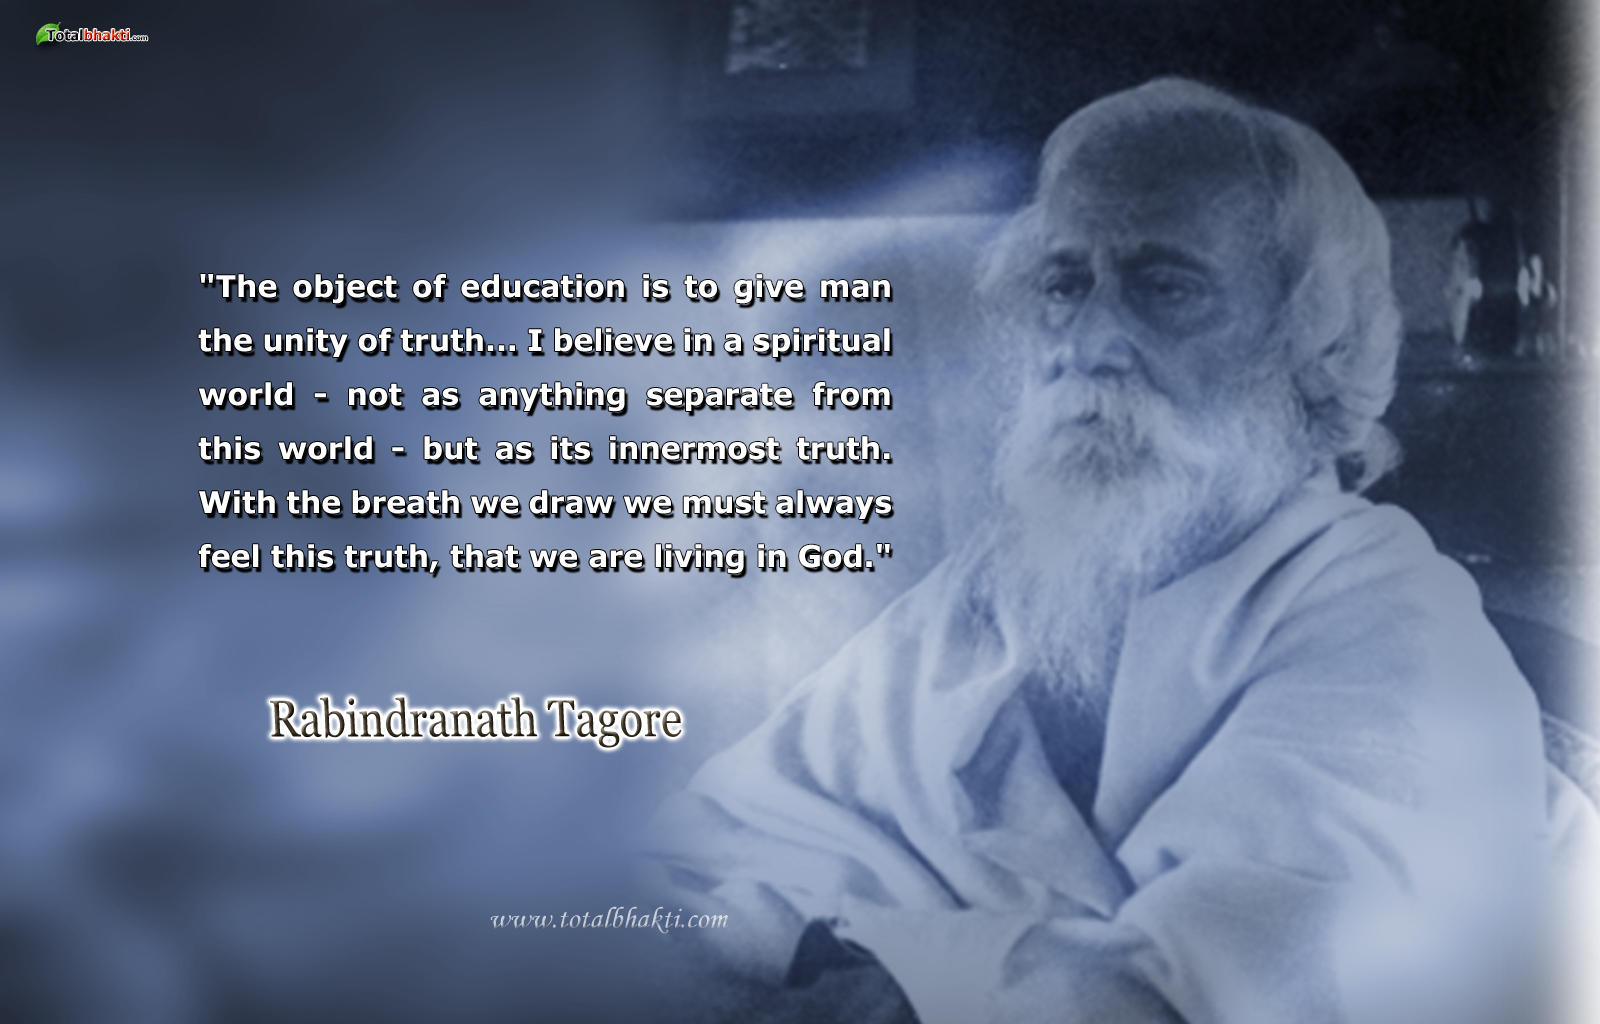 Rabindranath Tagore's quote #2